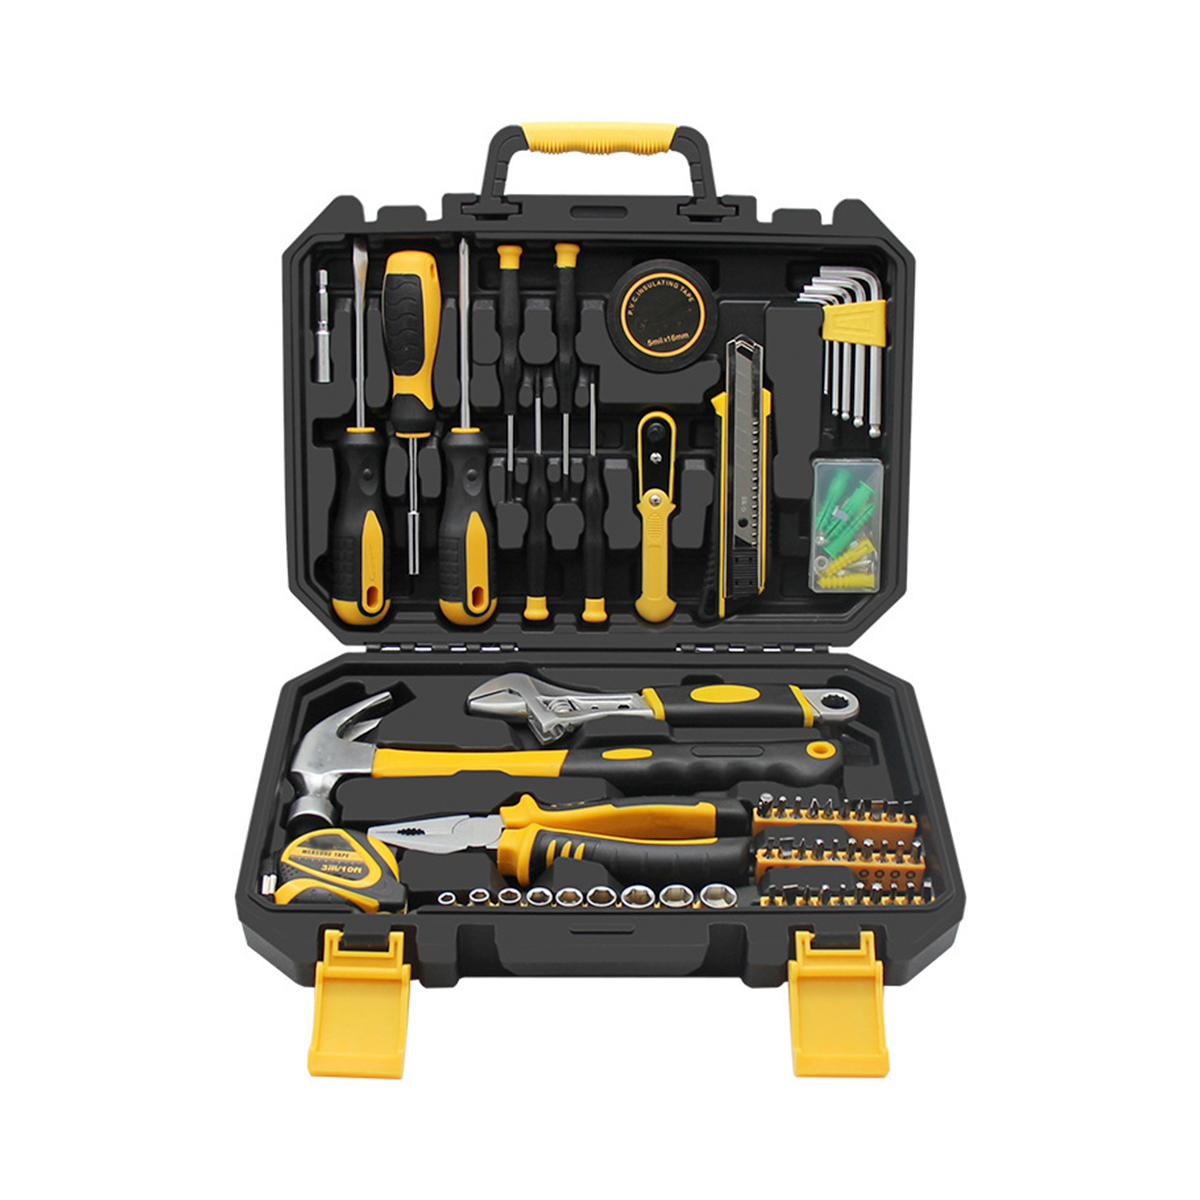 100 peças combinadas de kits de ferramentas manuais conjunto de ferramentas domésticas profissionais para reparos domésticos